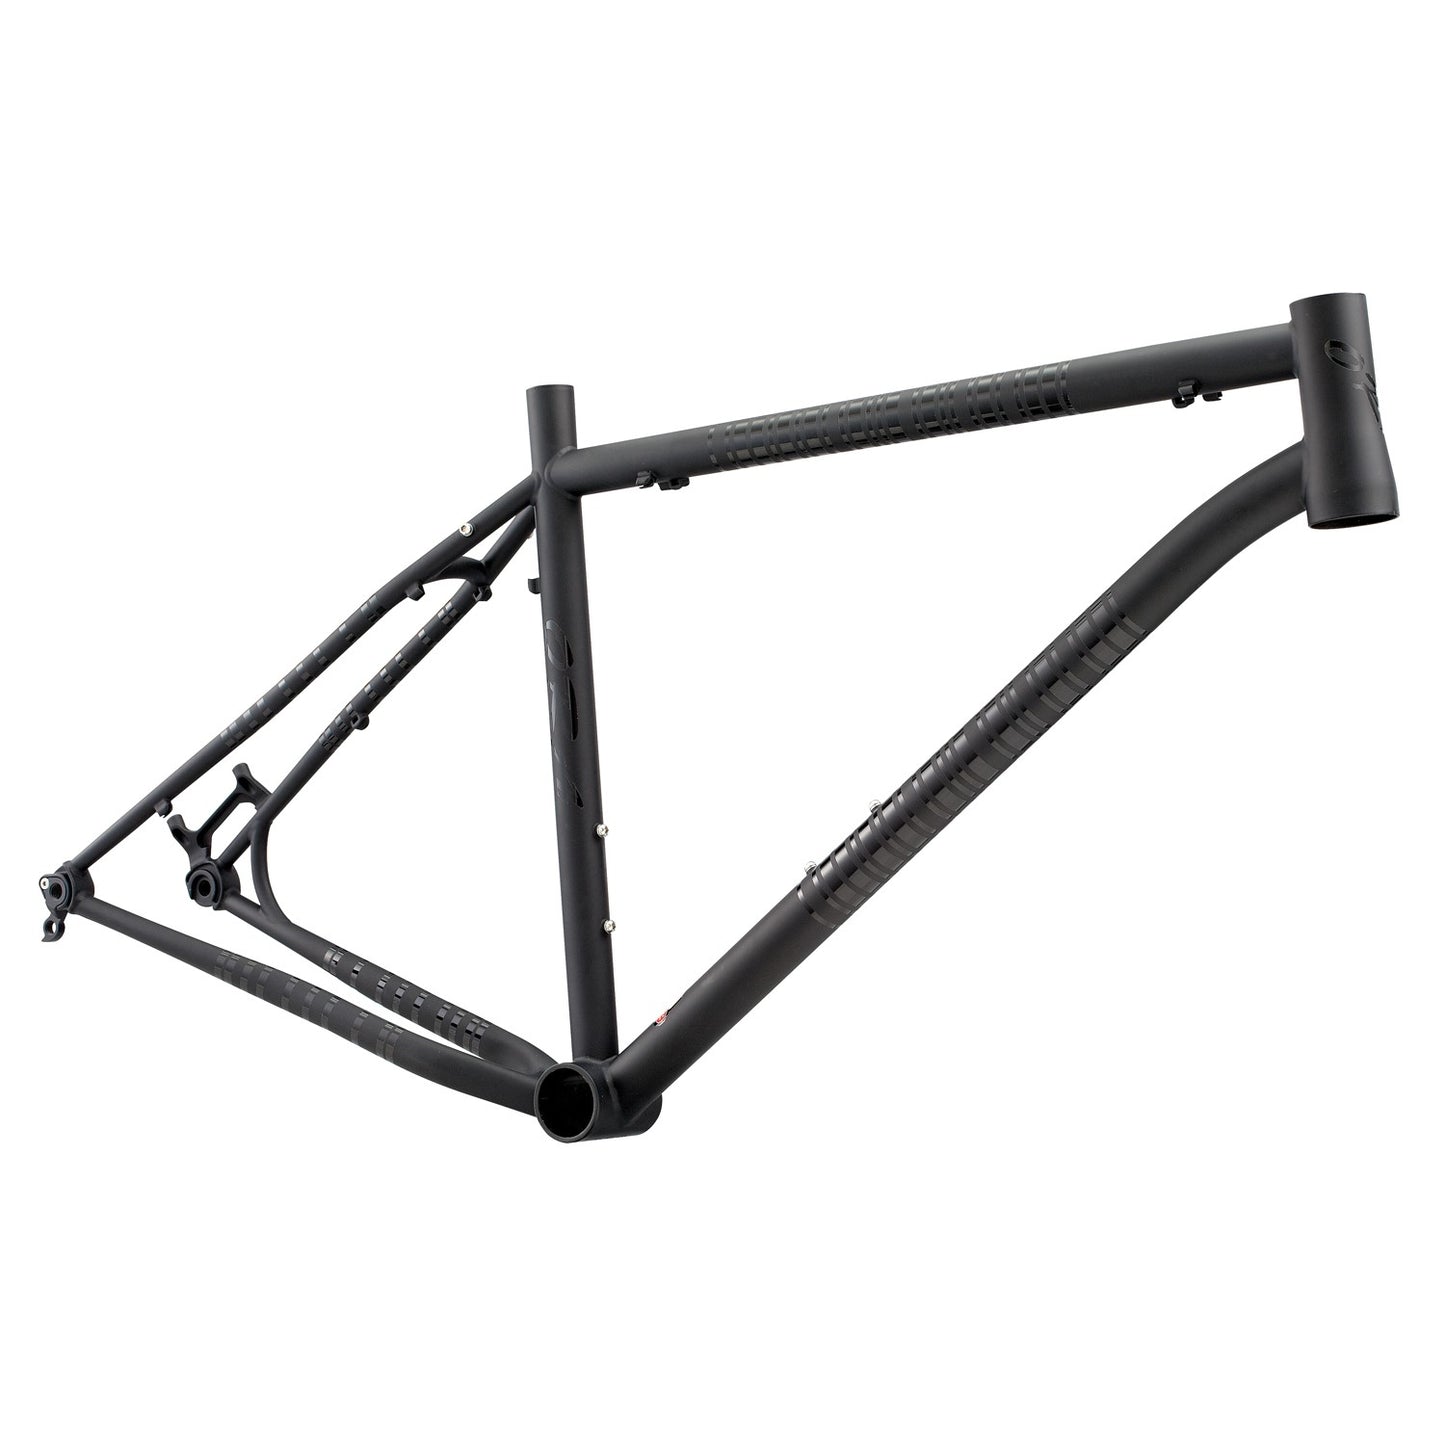 Chromoly Steel Mountain Bike Frame 23-TM-301